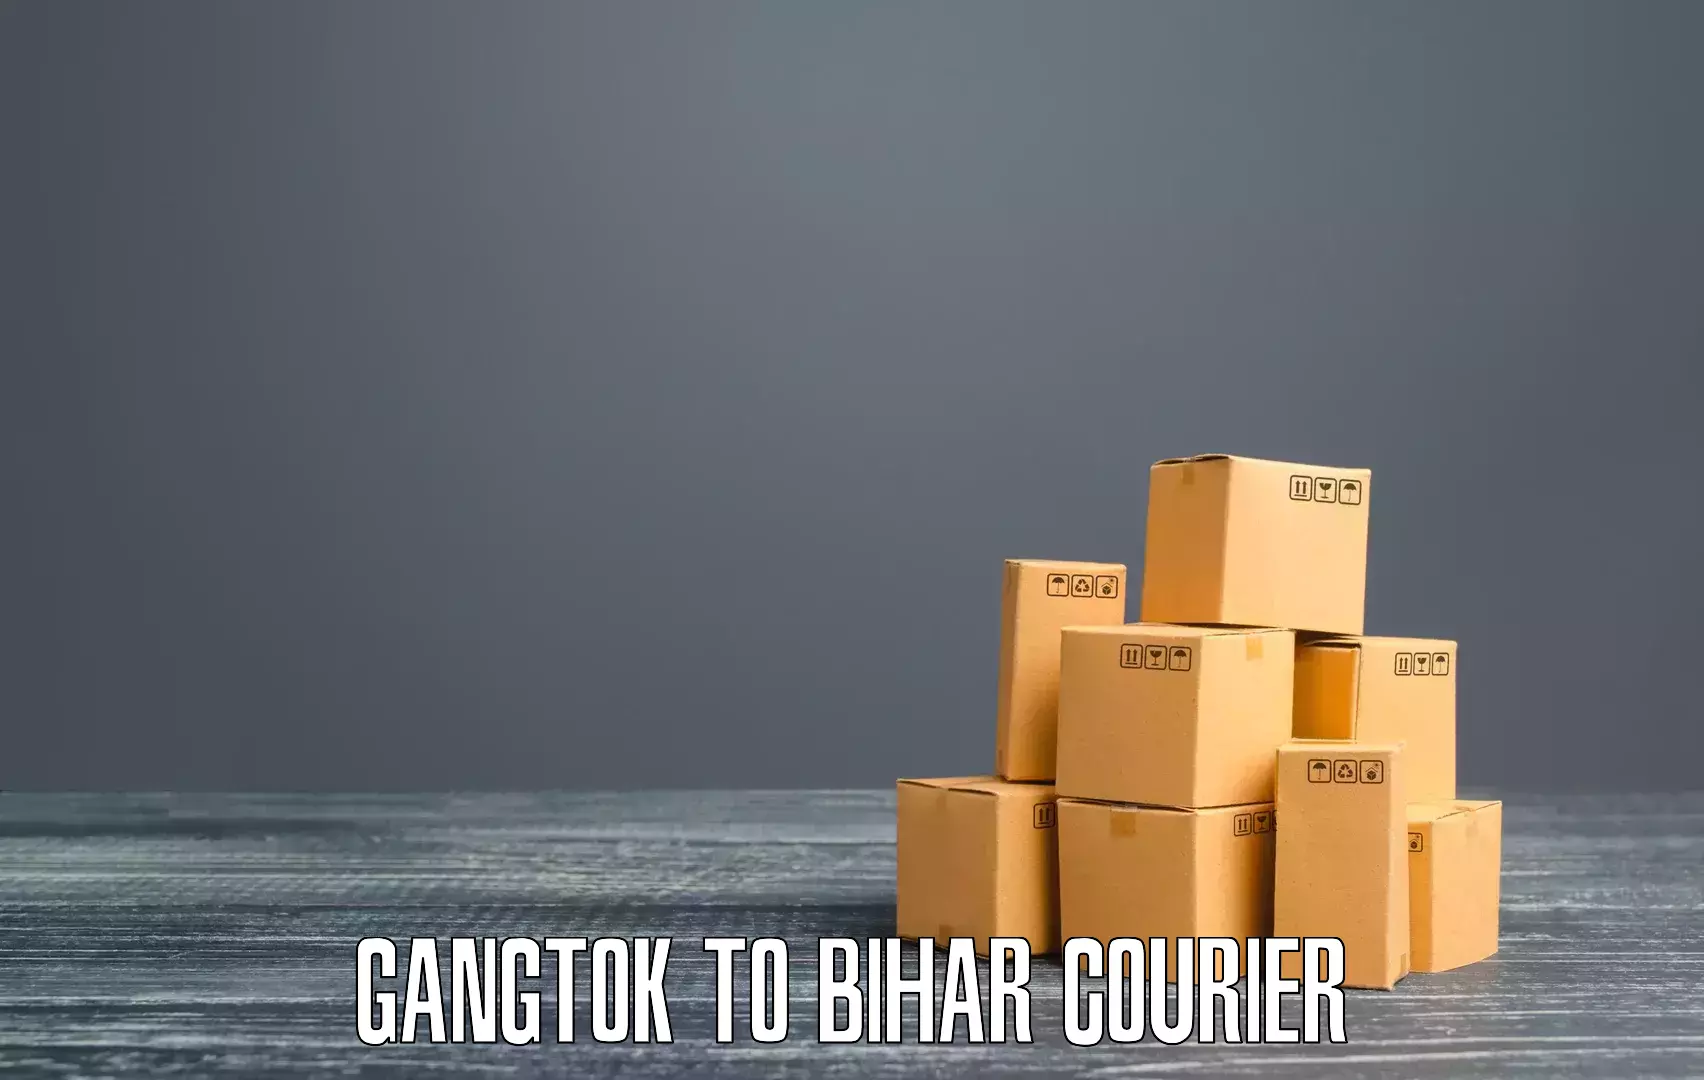 Digital courier platforms Gangtok to Mahnar Bazar